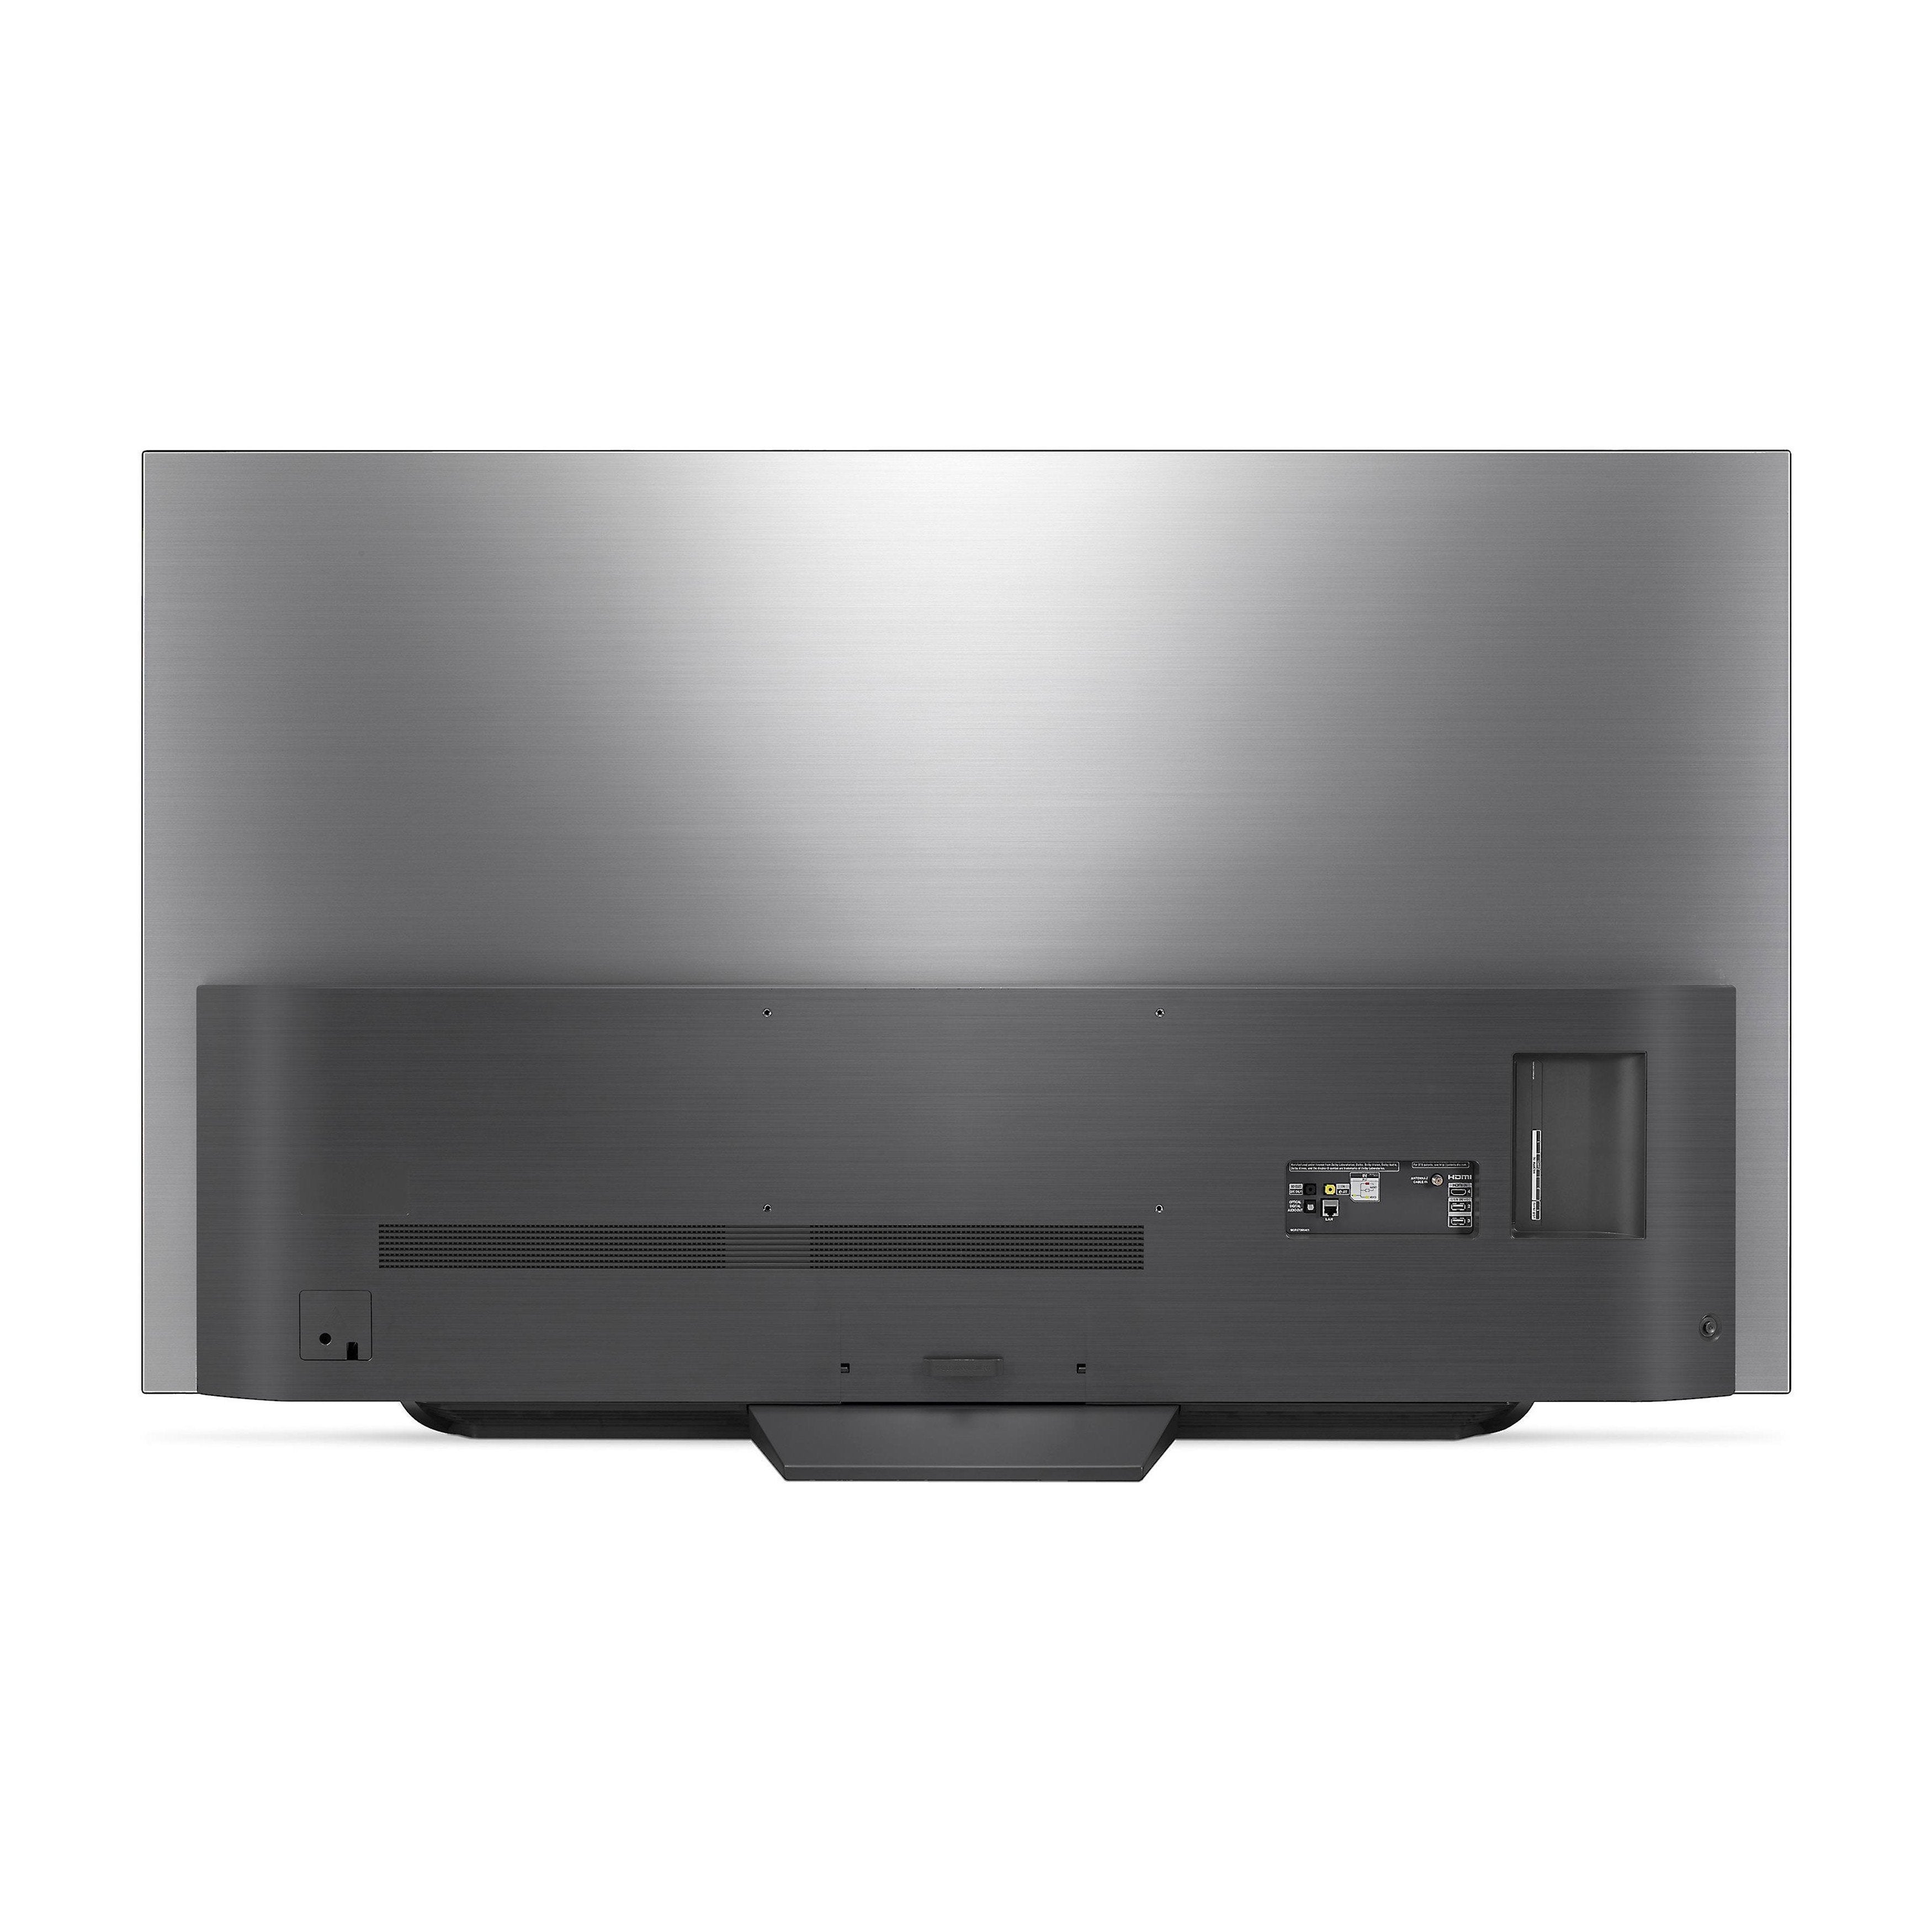 LG OLED77C8PUA 77-Inch 4K Ultra HD Smart OLED TV